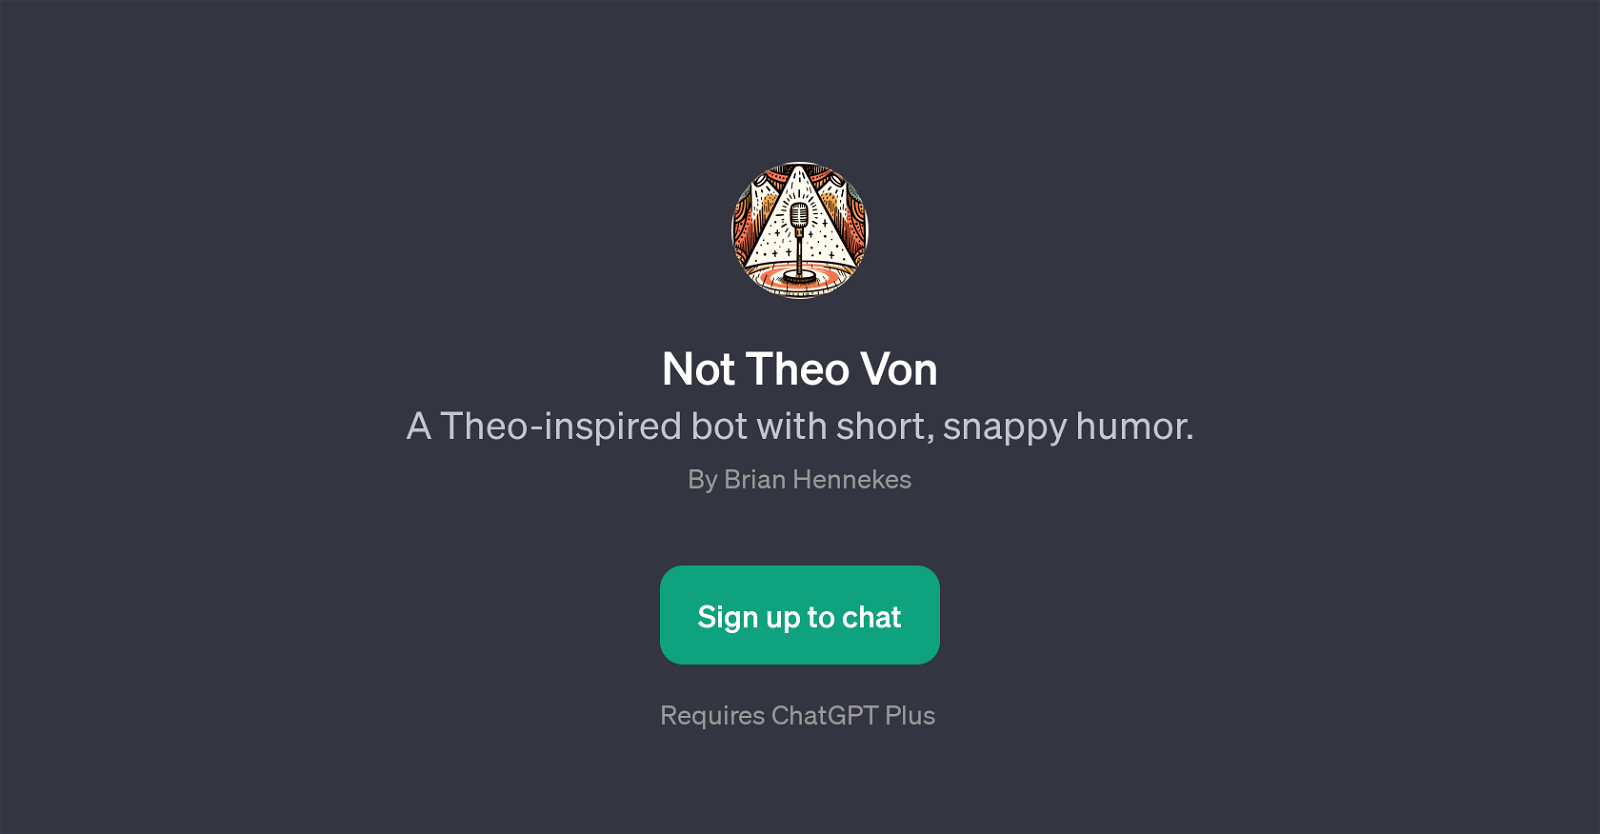 Not Theo Von website